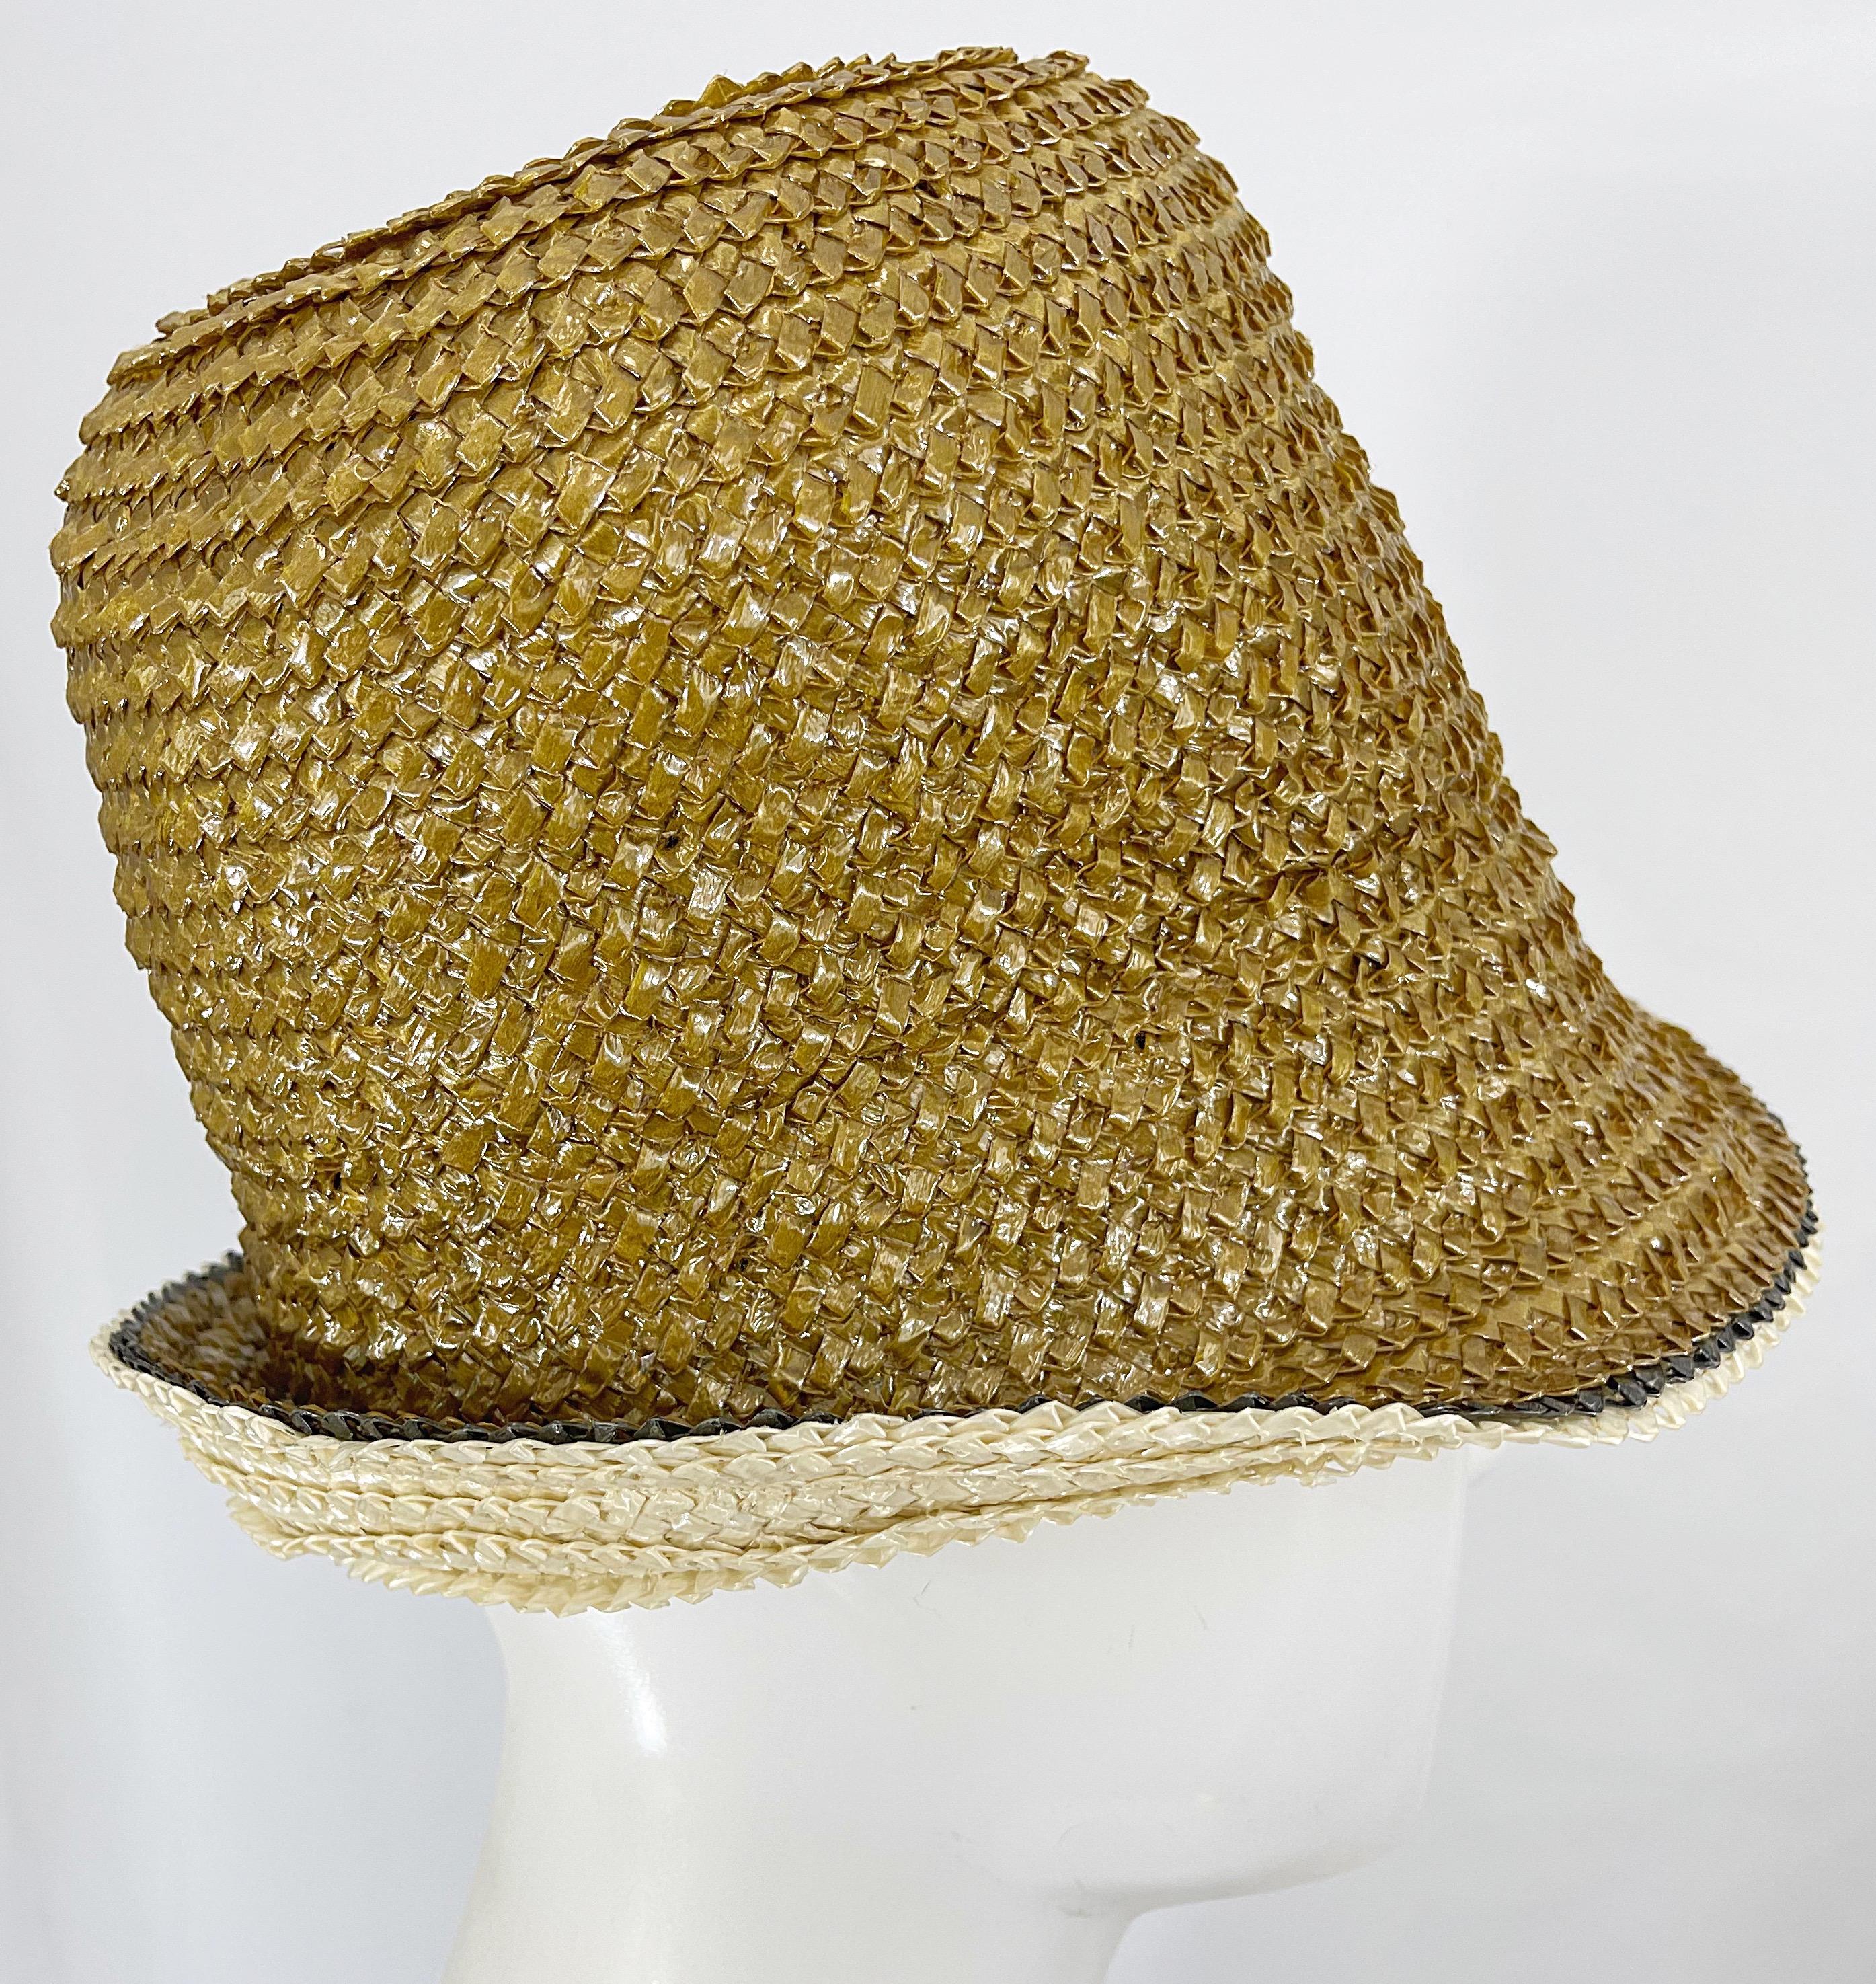 Schicke 1960er Jahre YVES SAINT LAURENT Gold Raffia Stroh Cloche Hut ! Ein schönes gedämpftes Gold. Kann auf verschiedene Weise getragen werden, wie abgebildet. Kombinieren Sie es mit Jeans und einem Tank, einem Kleid, etc. Ideal für jede